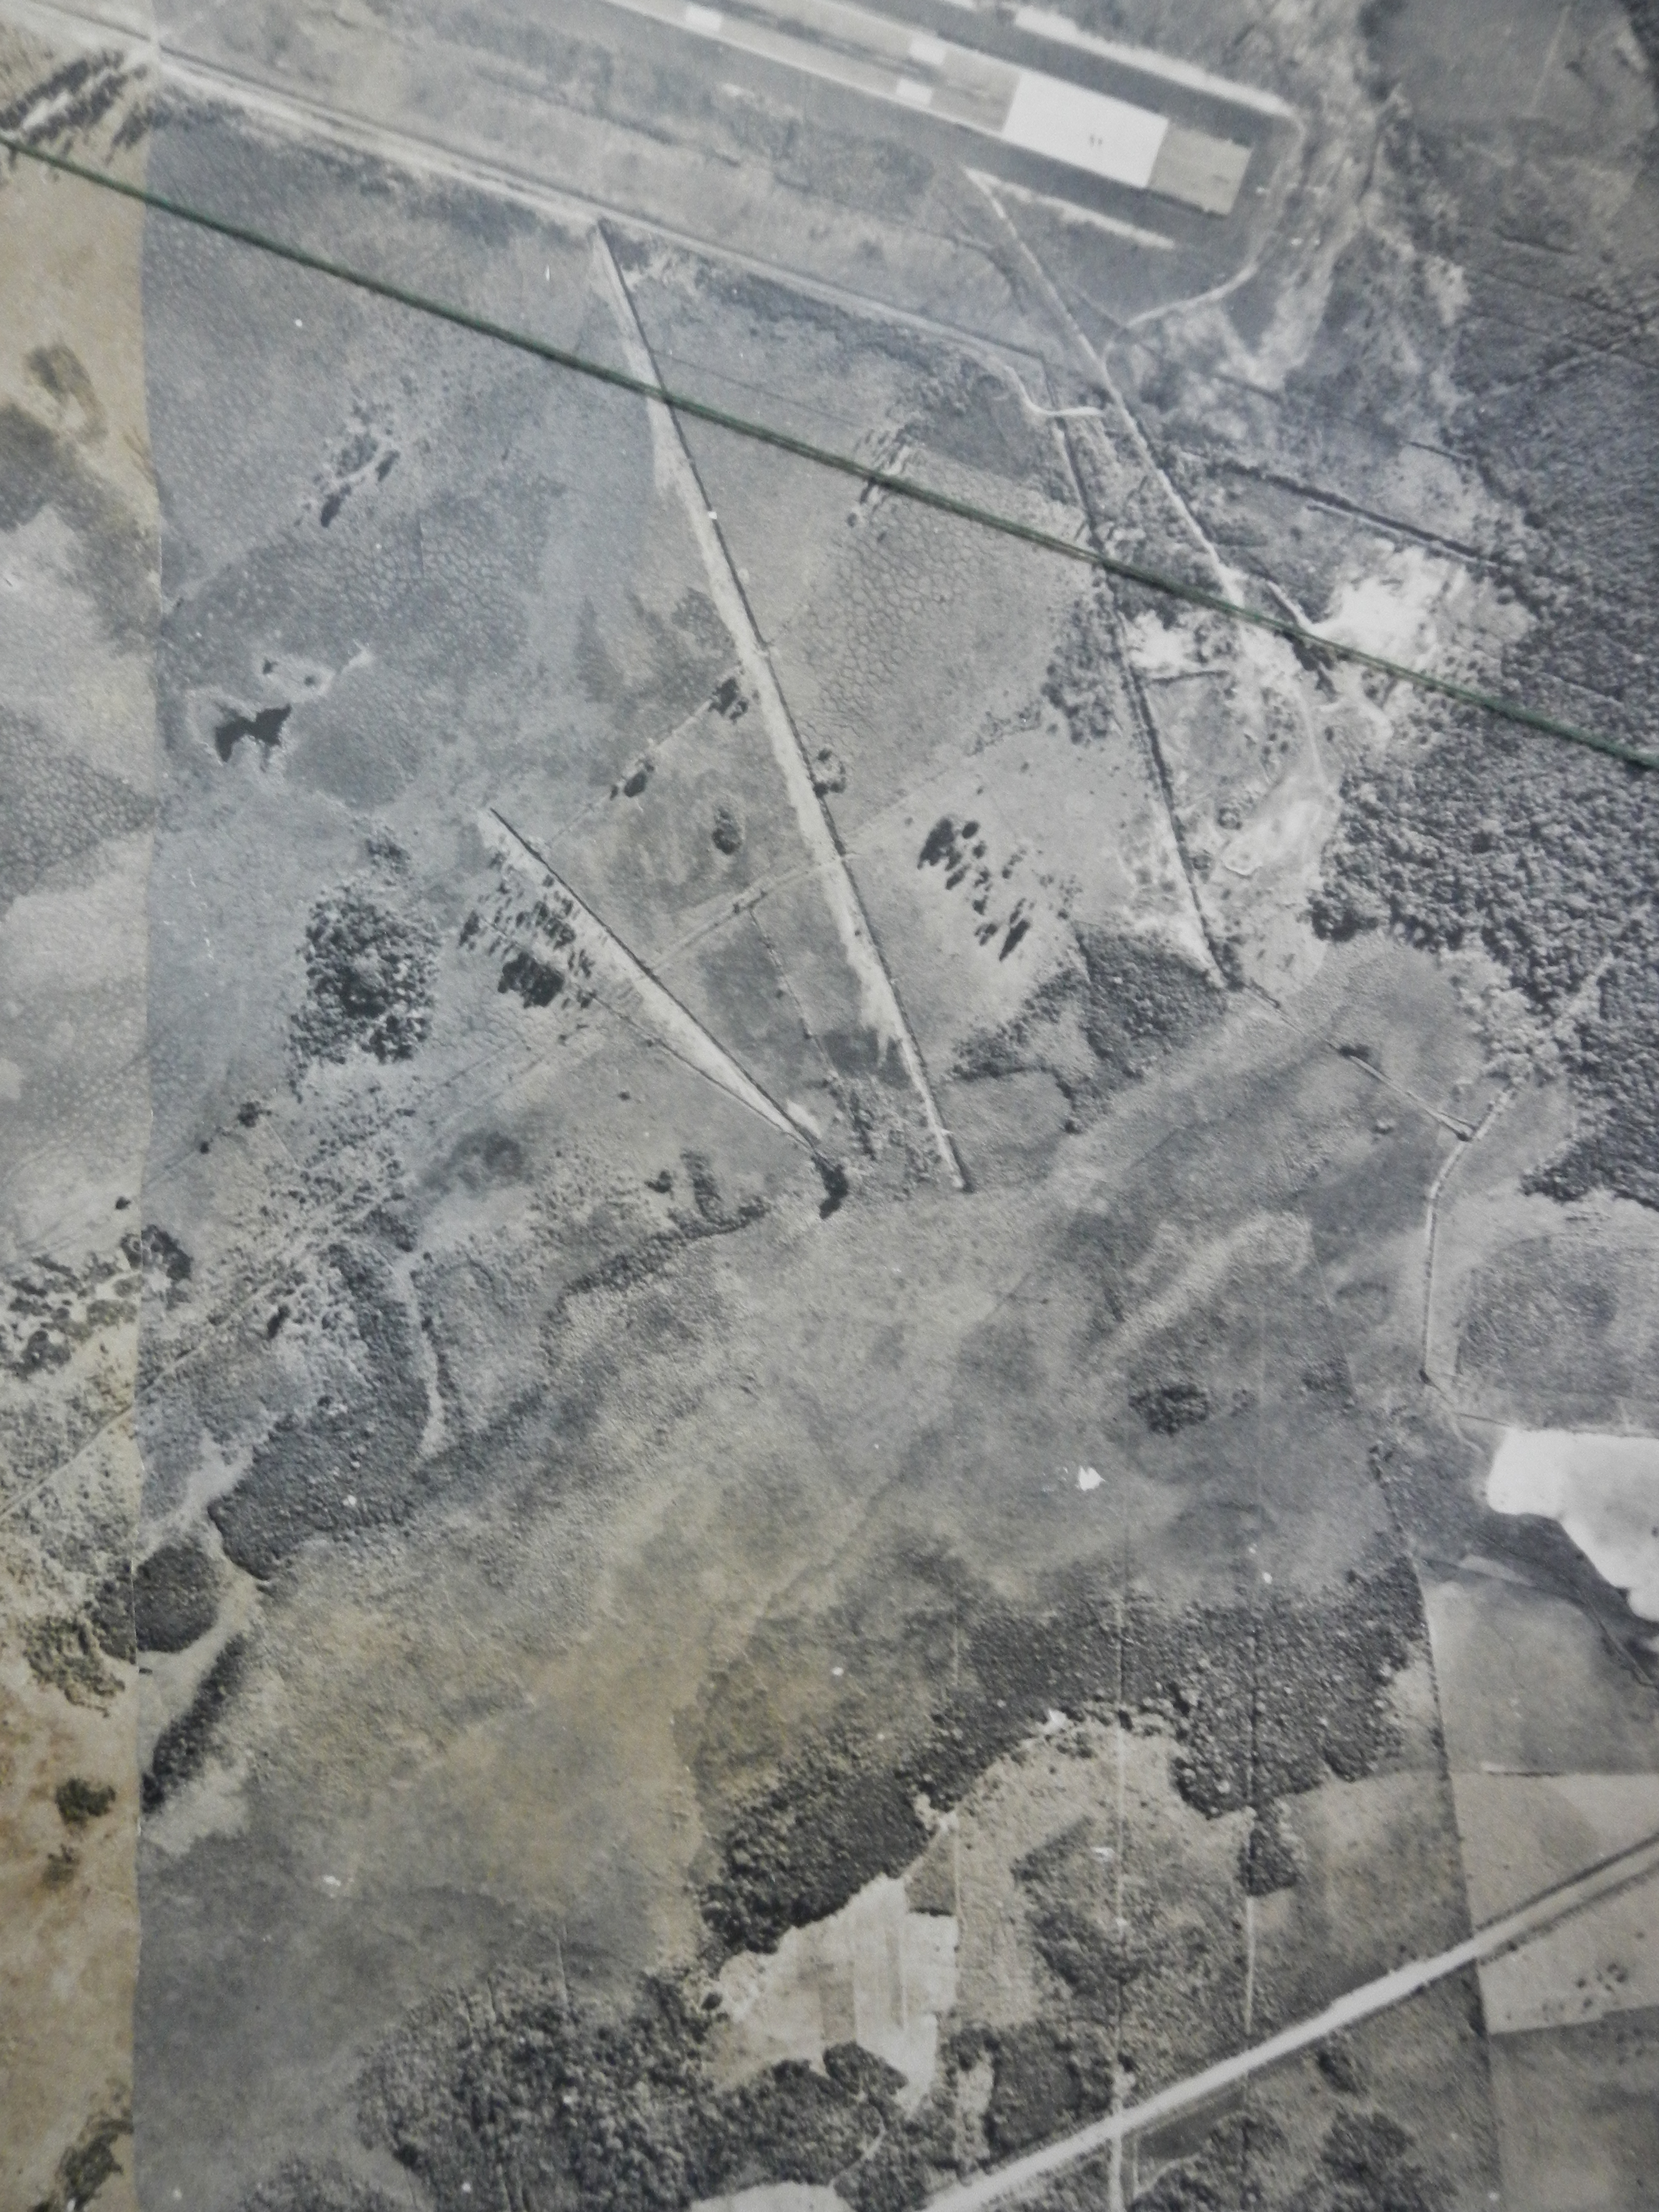 1979 Fazenda Imagem aérea na Base Aérea 010.jpg